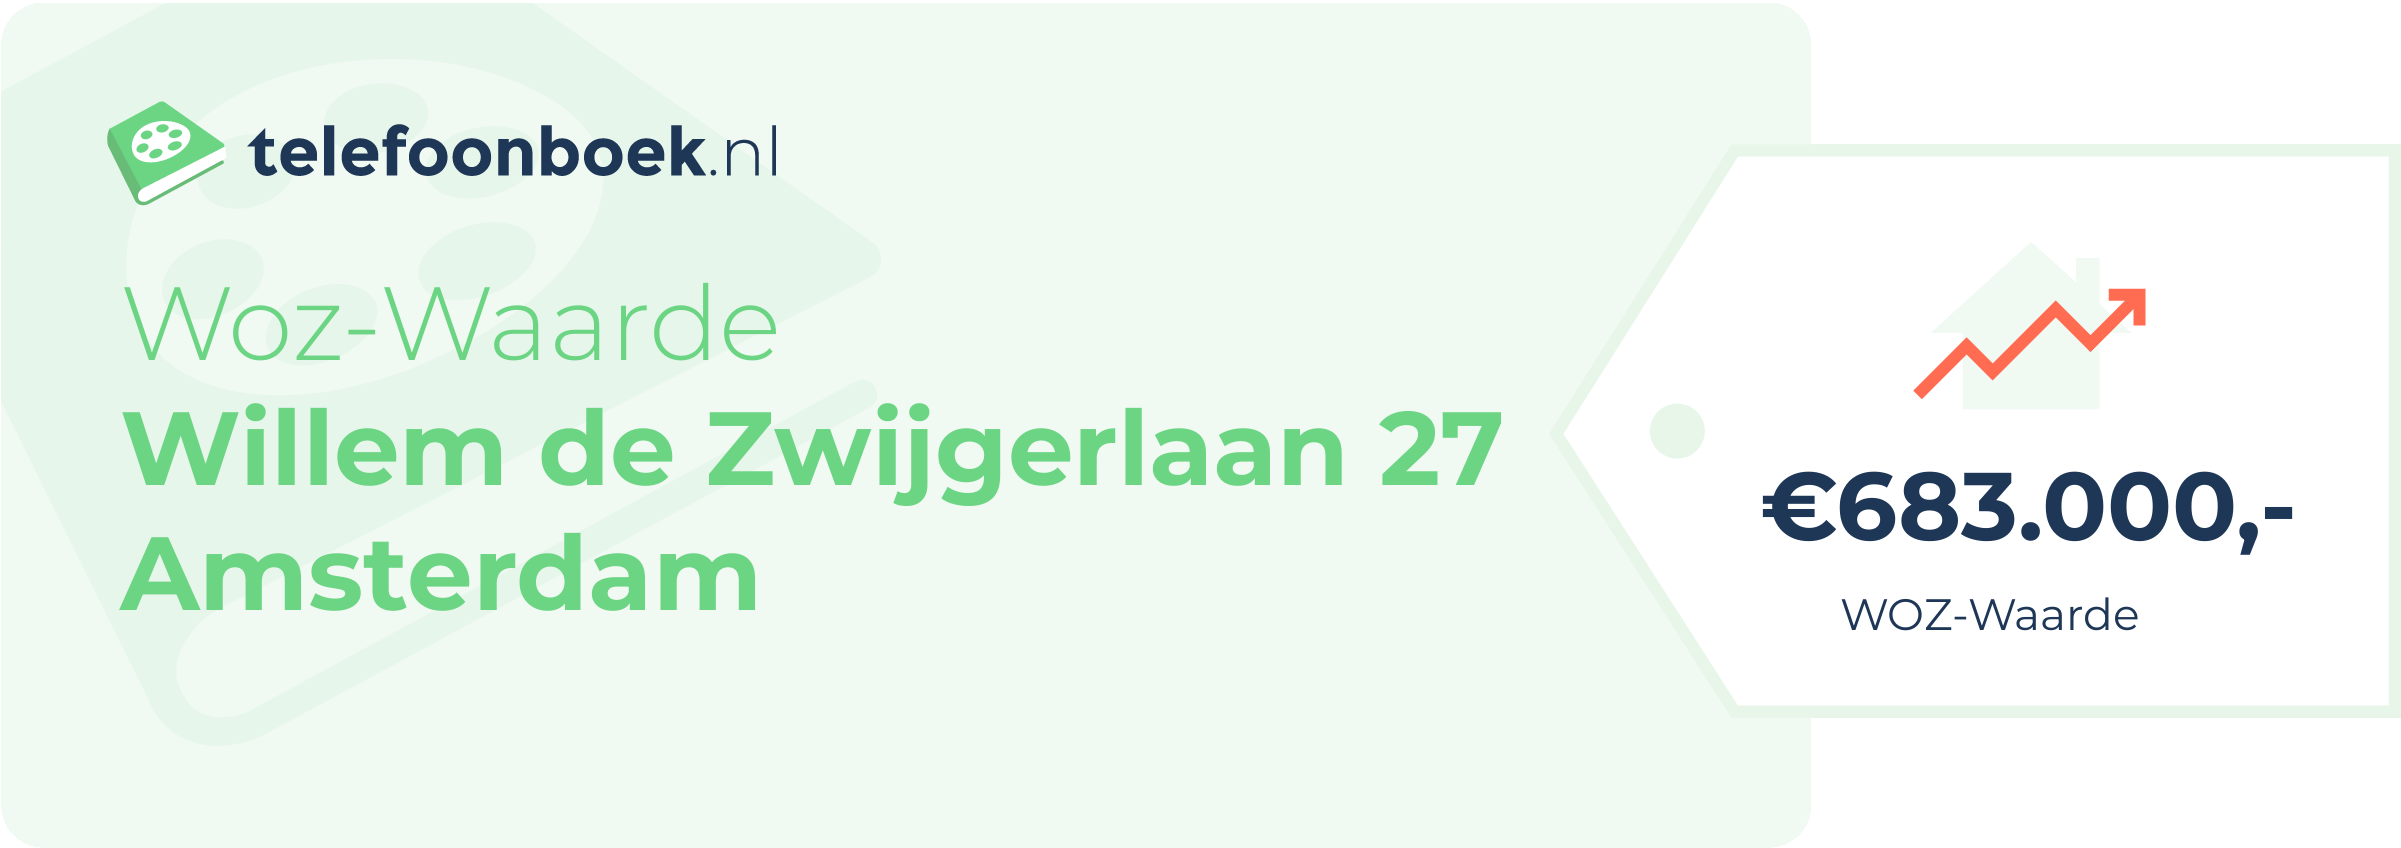 WOZ-waarde Willem De Zwijgerlaan 27 Amsterdam